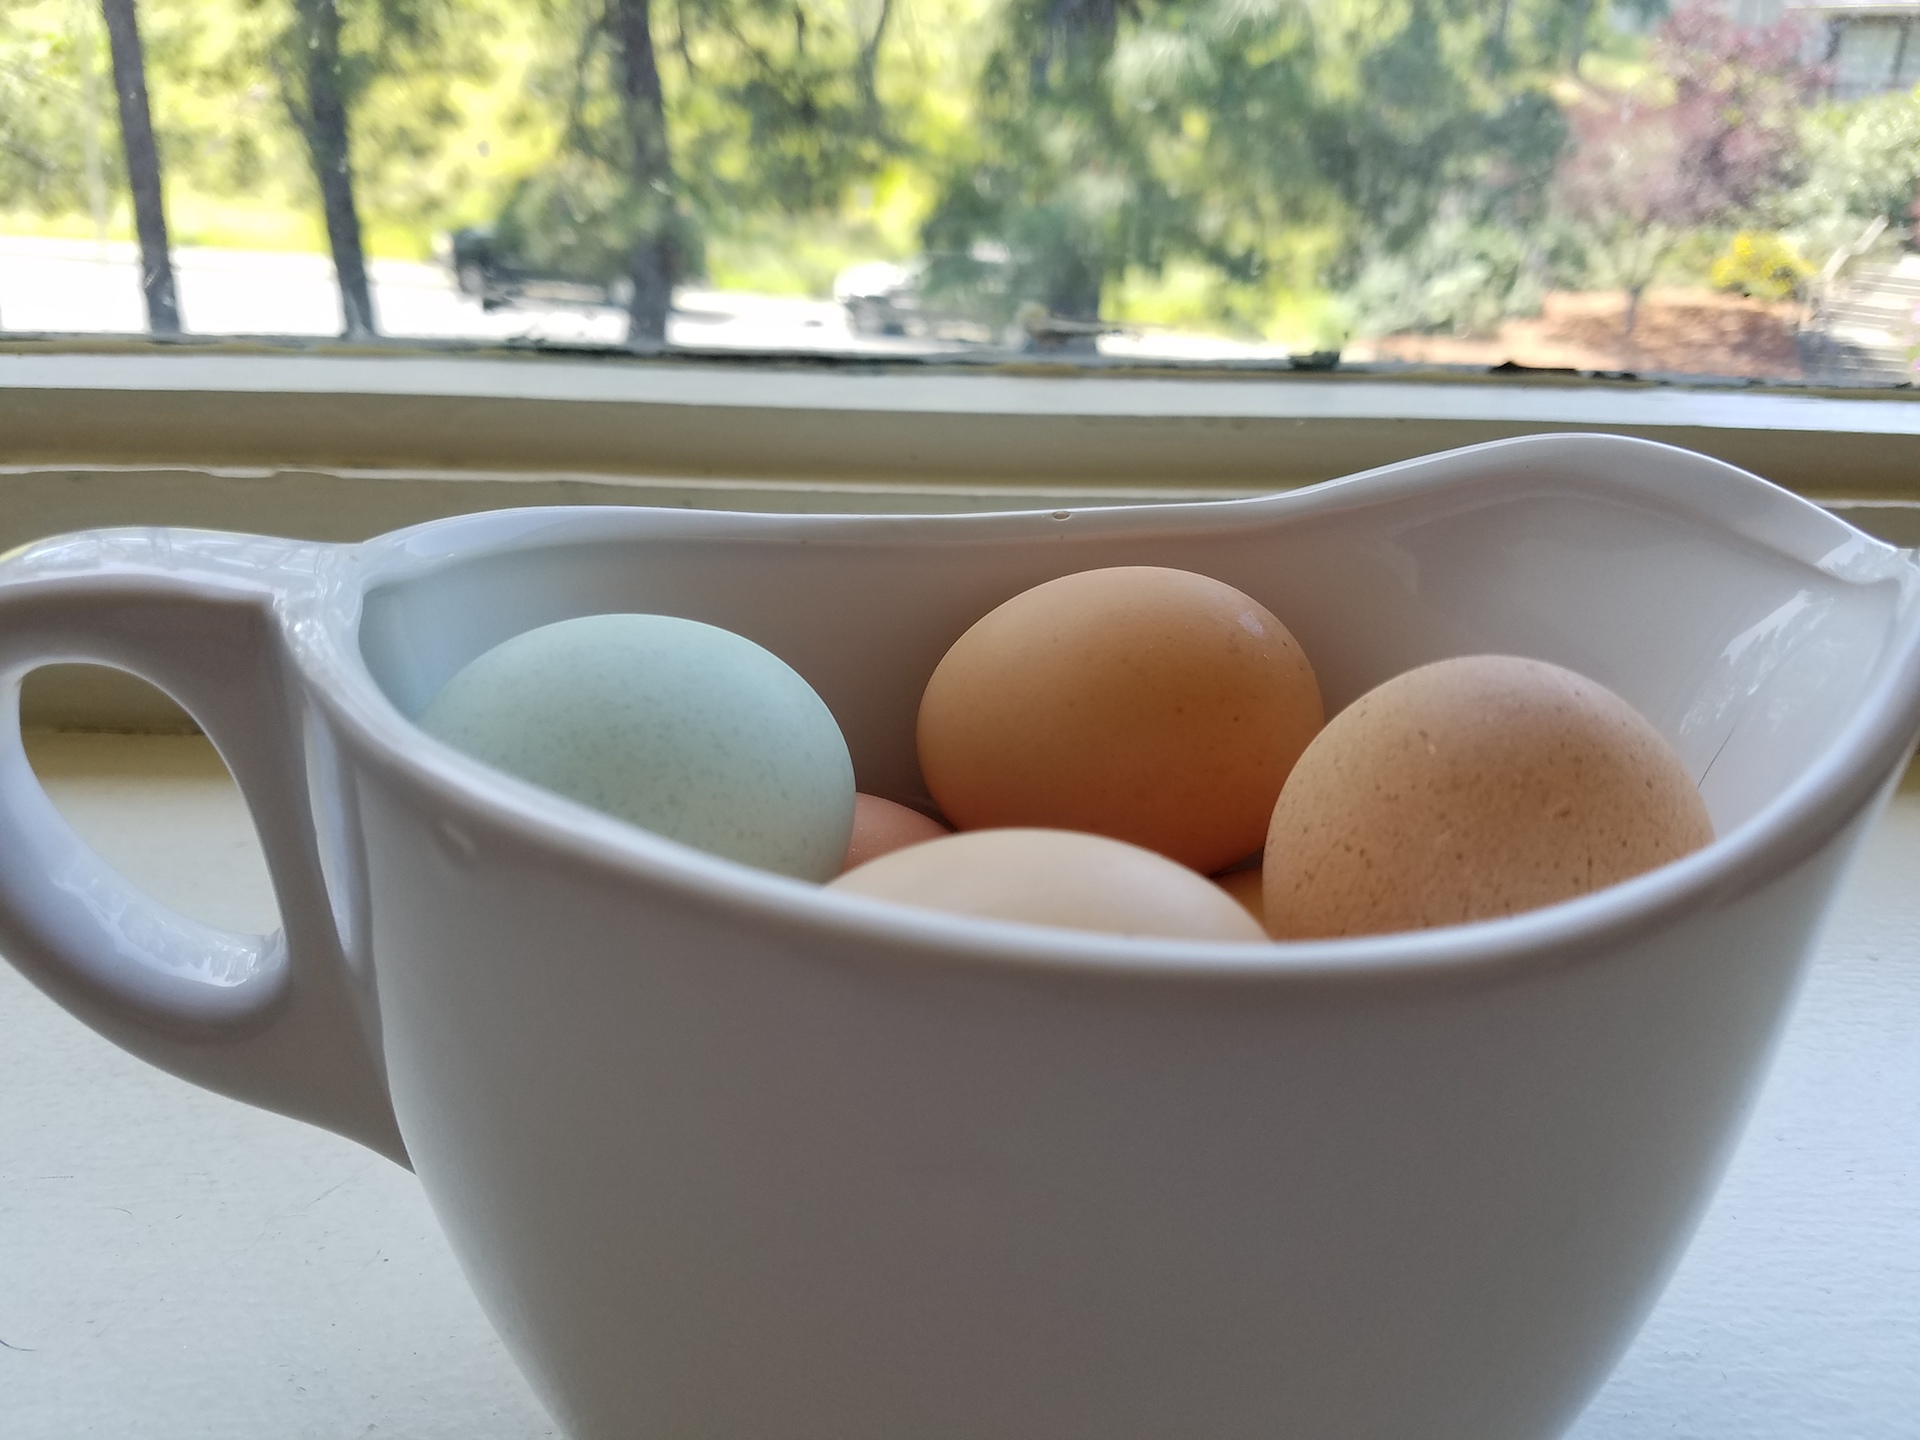 The multi-colored eggs.